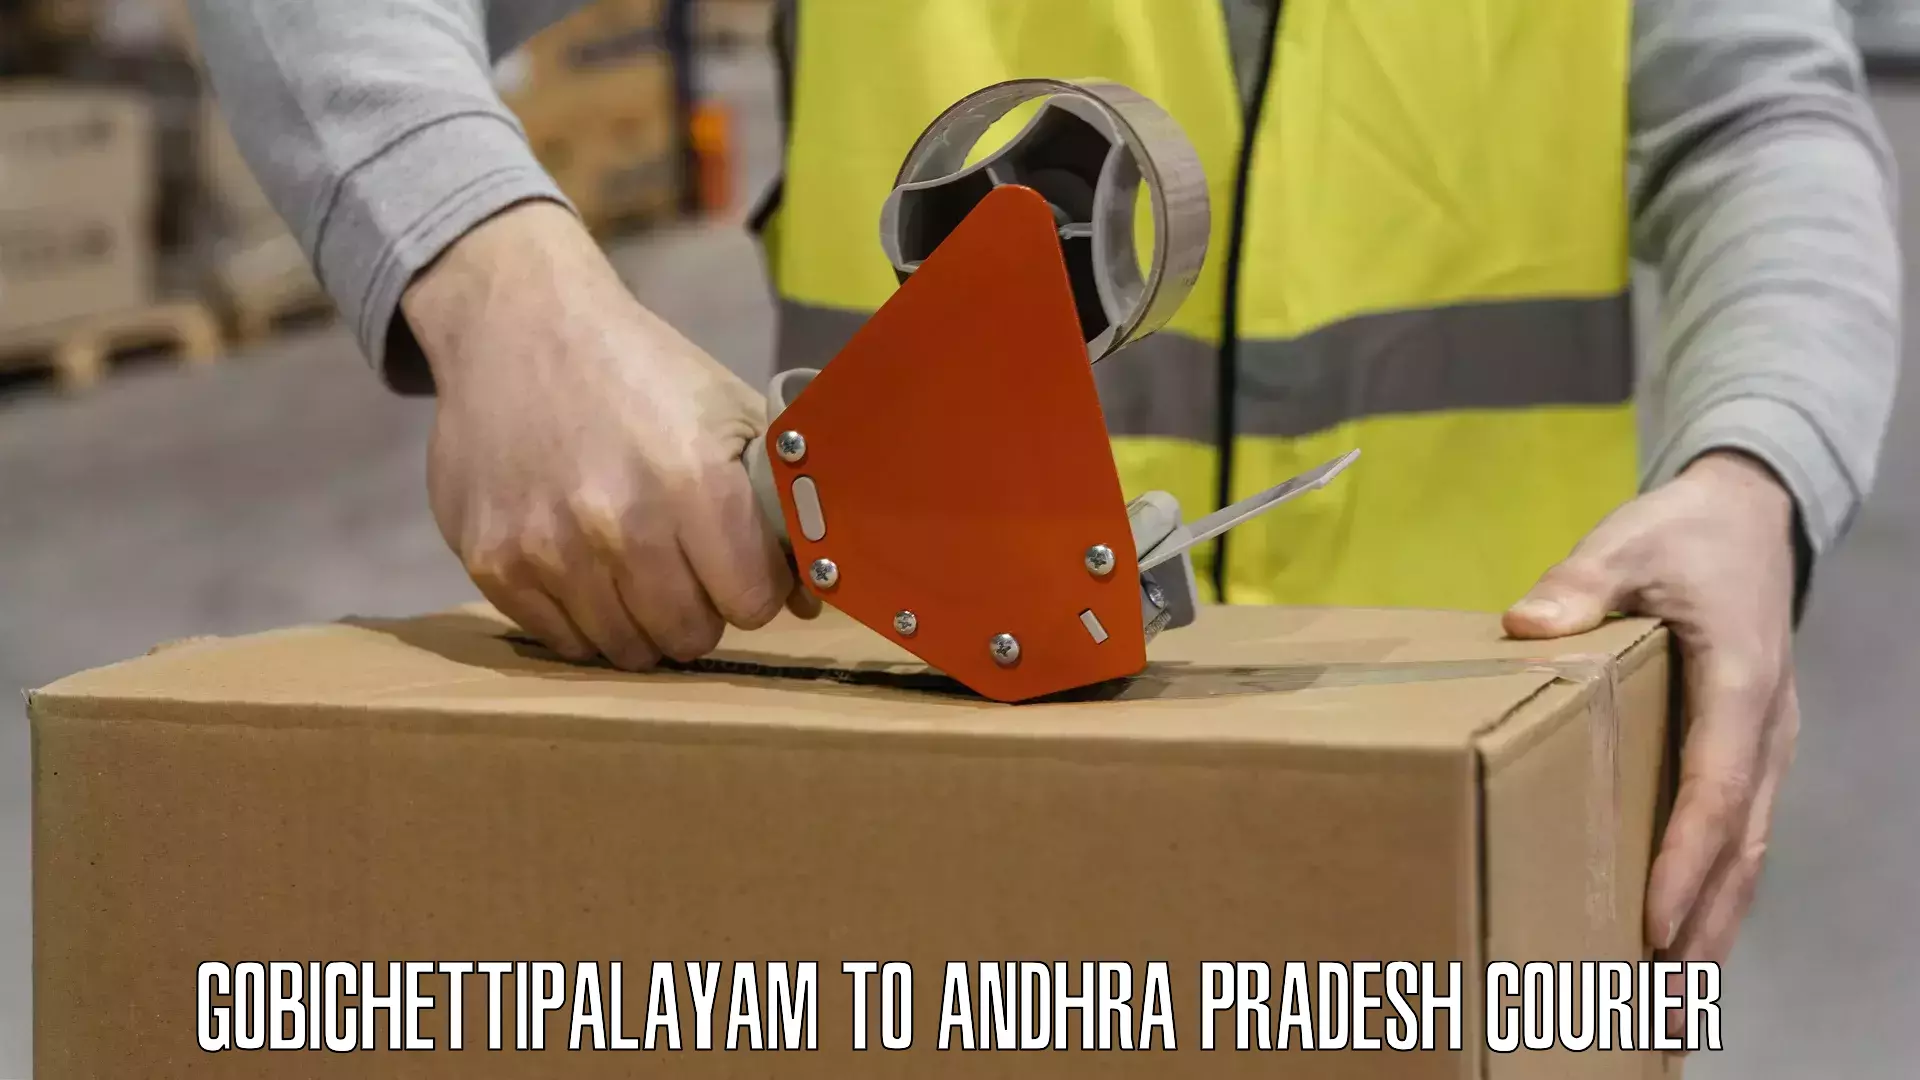 Specialized shipment handling Gobichettipalayam to IIT Tirupati